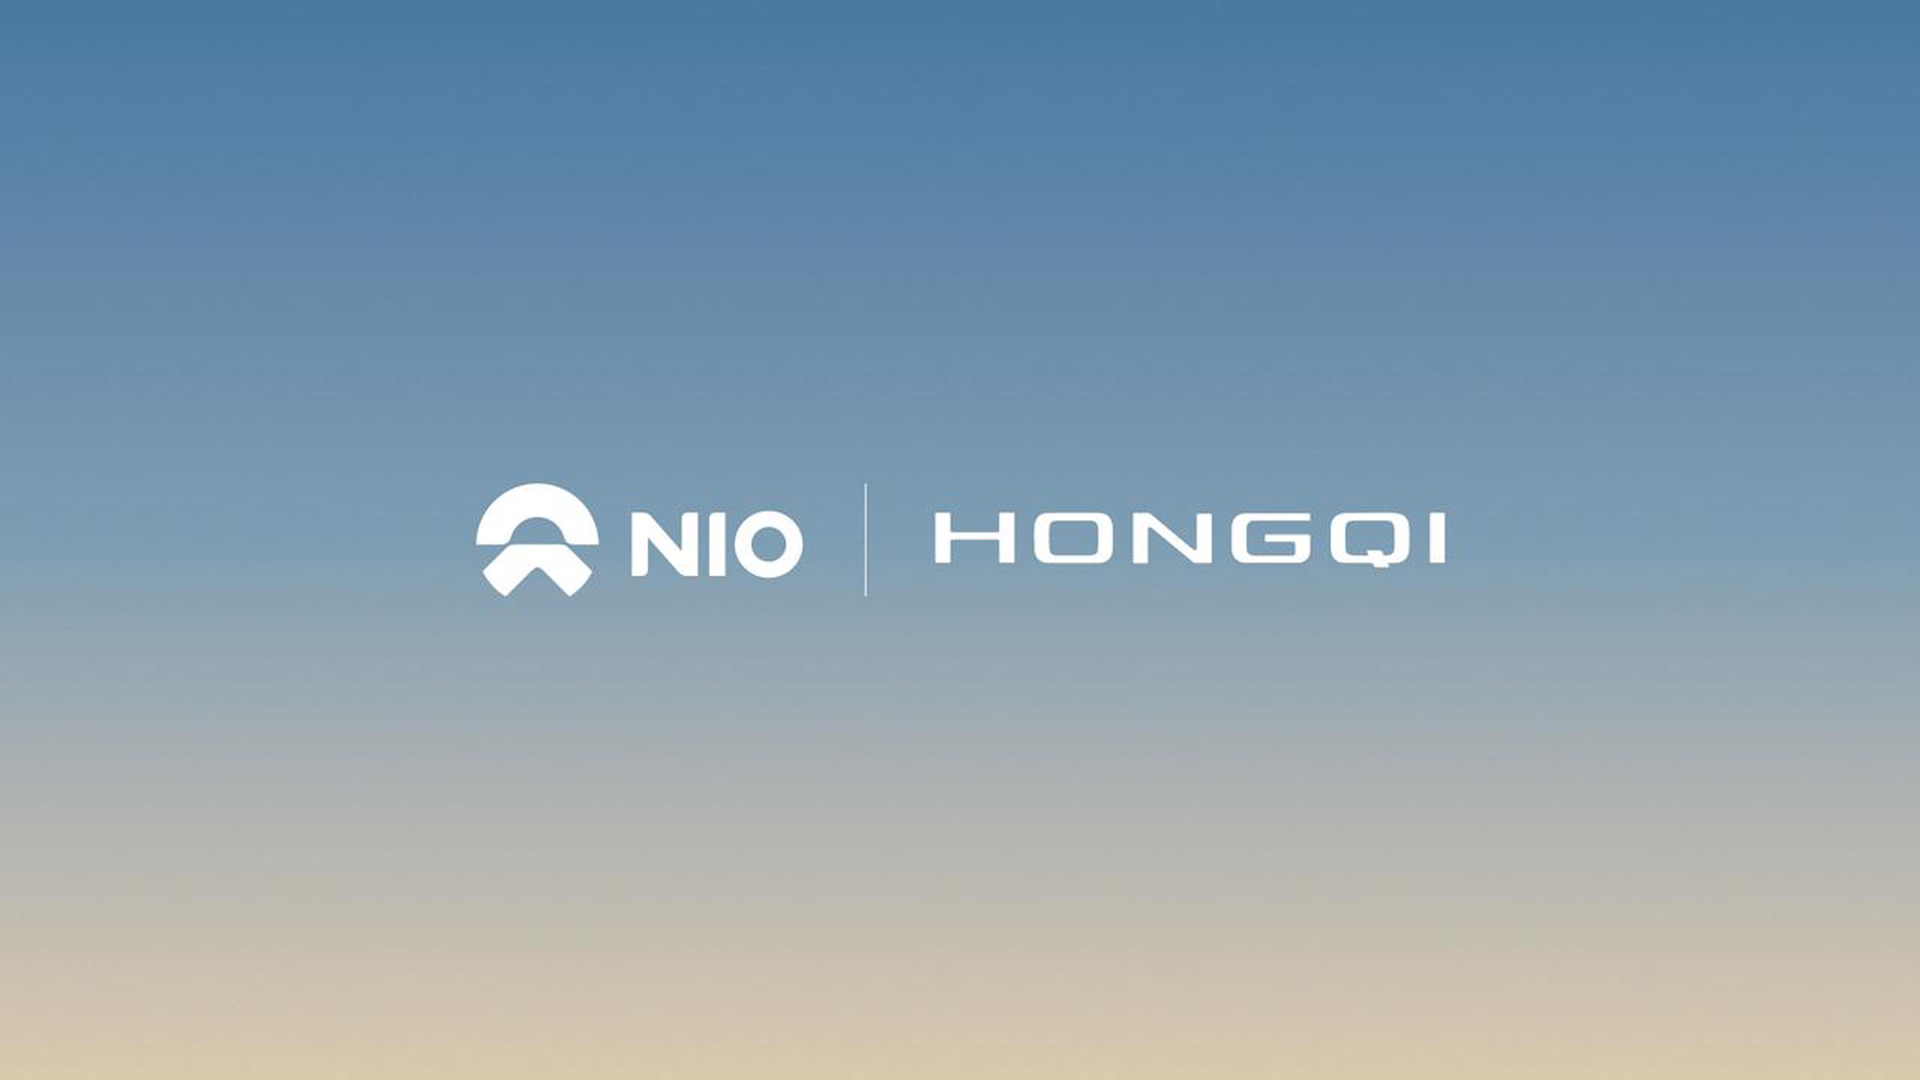 NIO og Hongqi åpner ladeinfrastruktur for hverandre